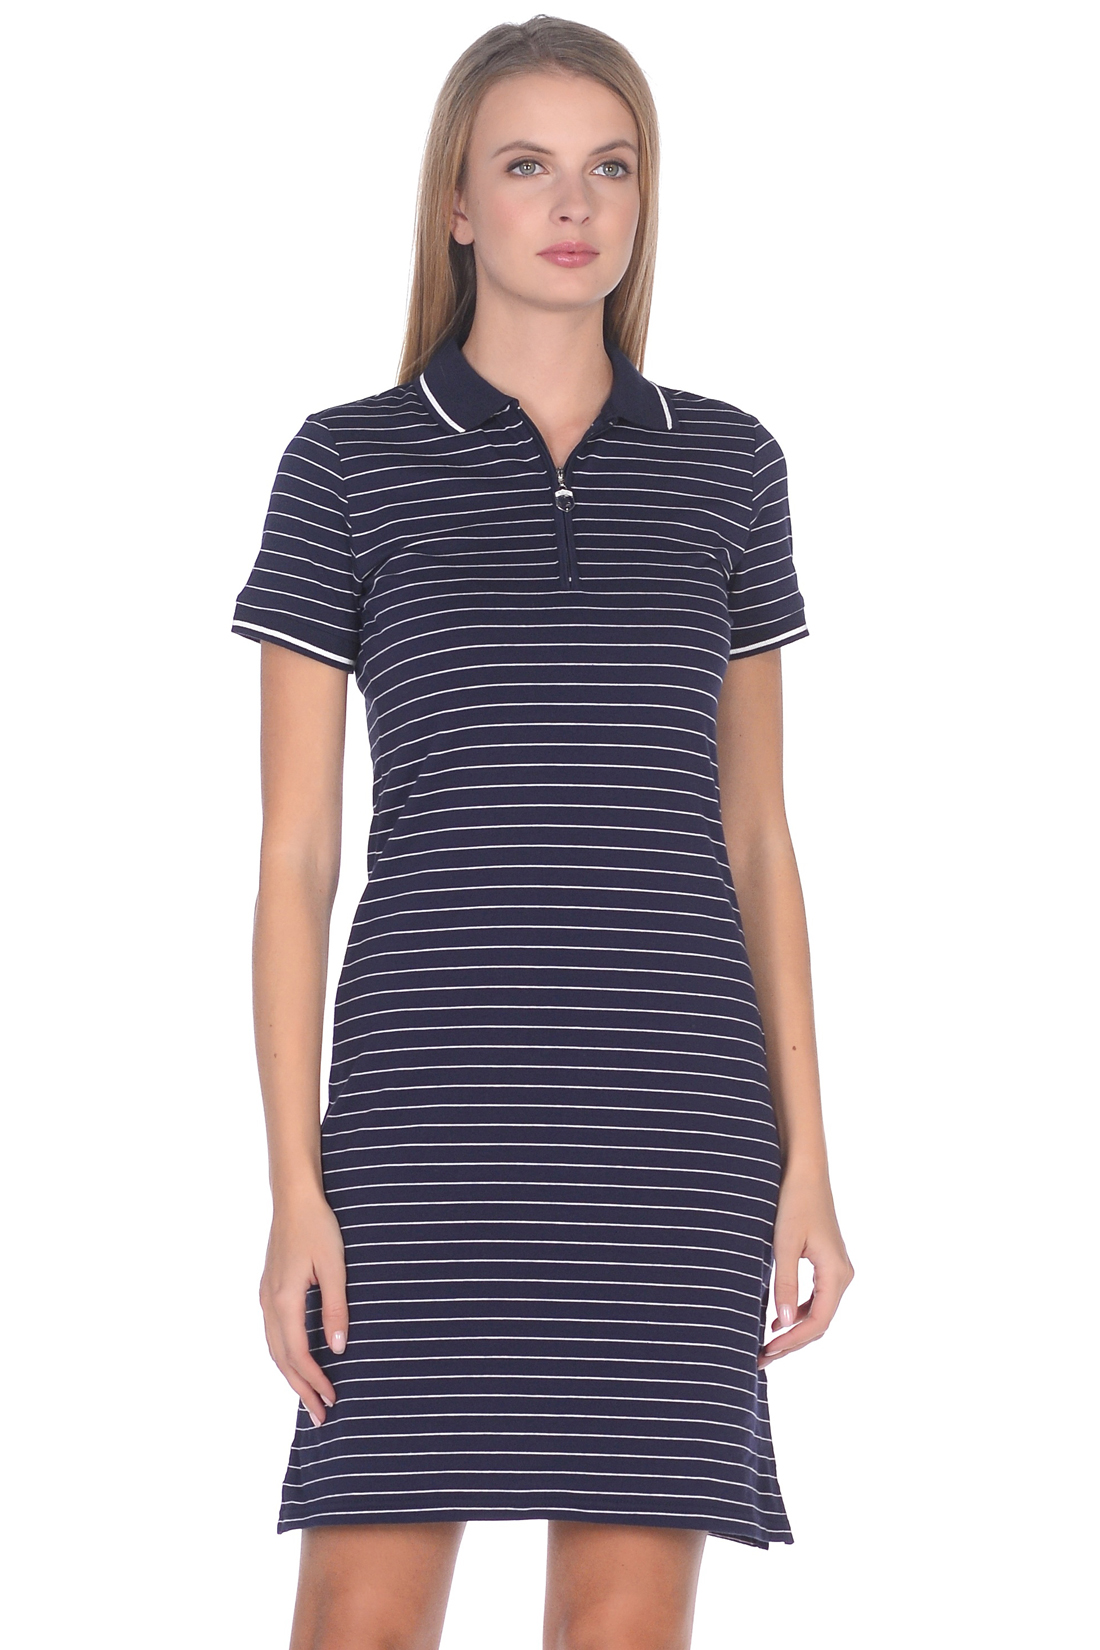 Платье-поло в полоску (арт. baon B459202), размер M, цвет dark navy striped#синий Платье-поло в полоску (арт. baon B459202) - фото 3